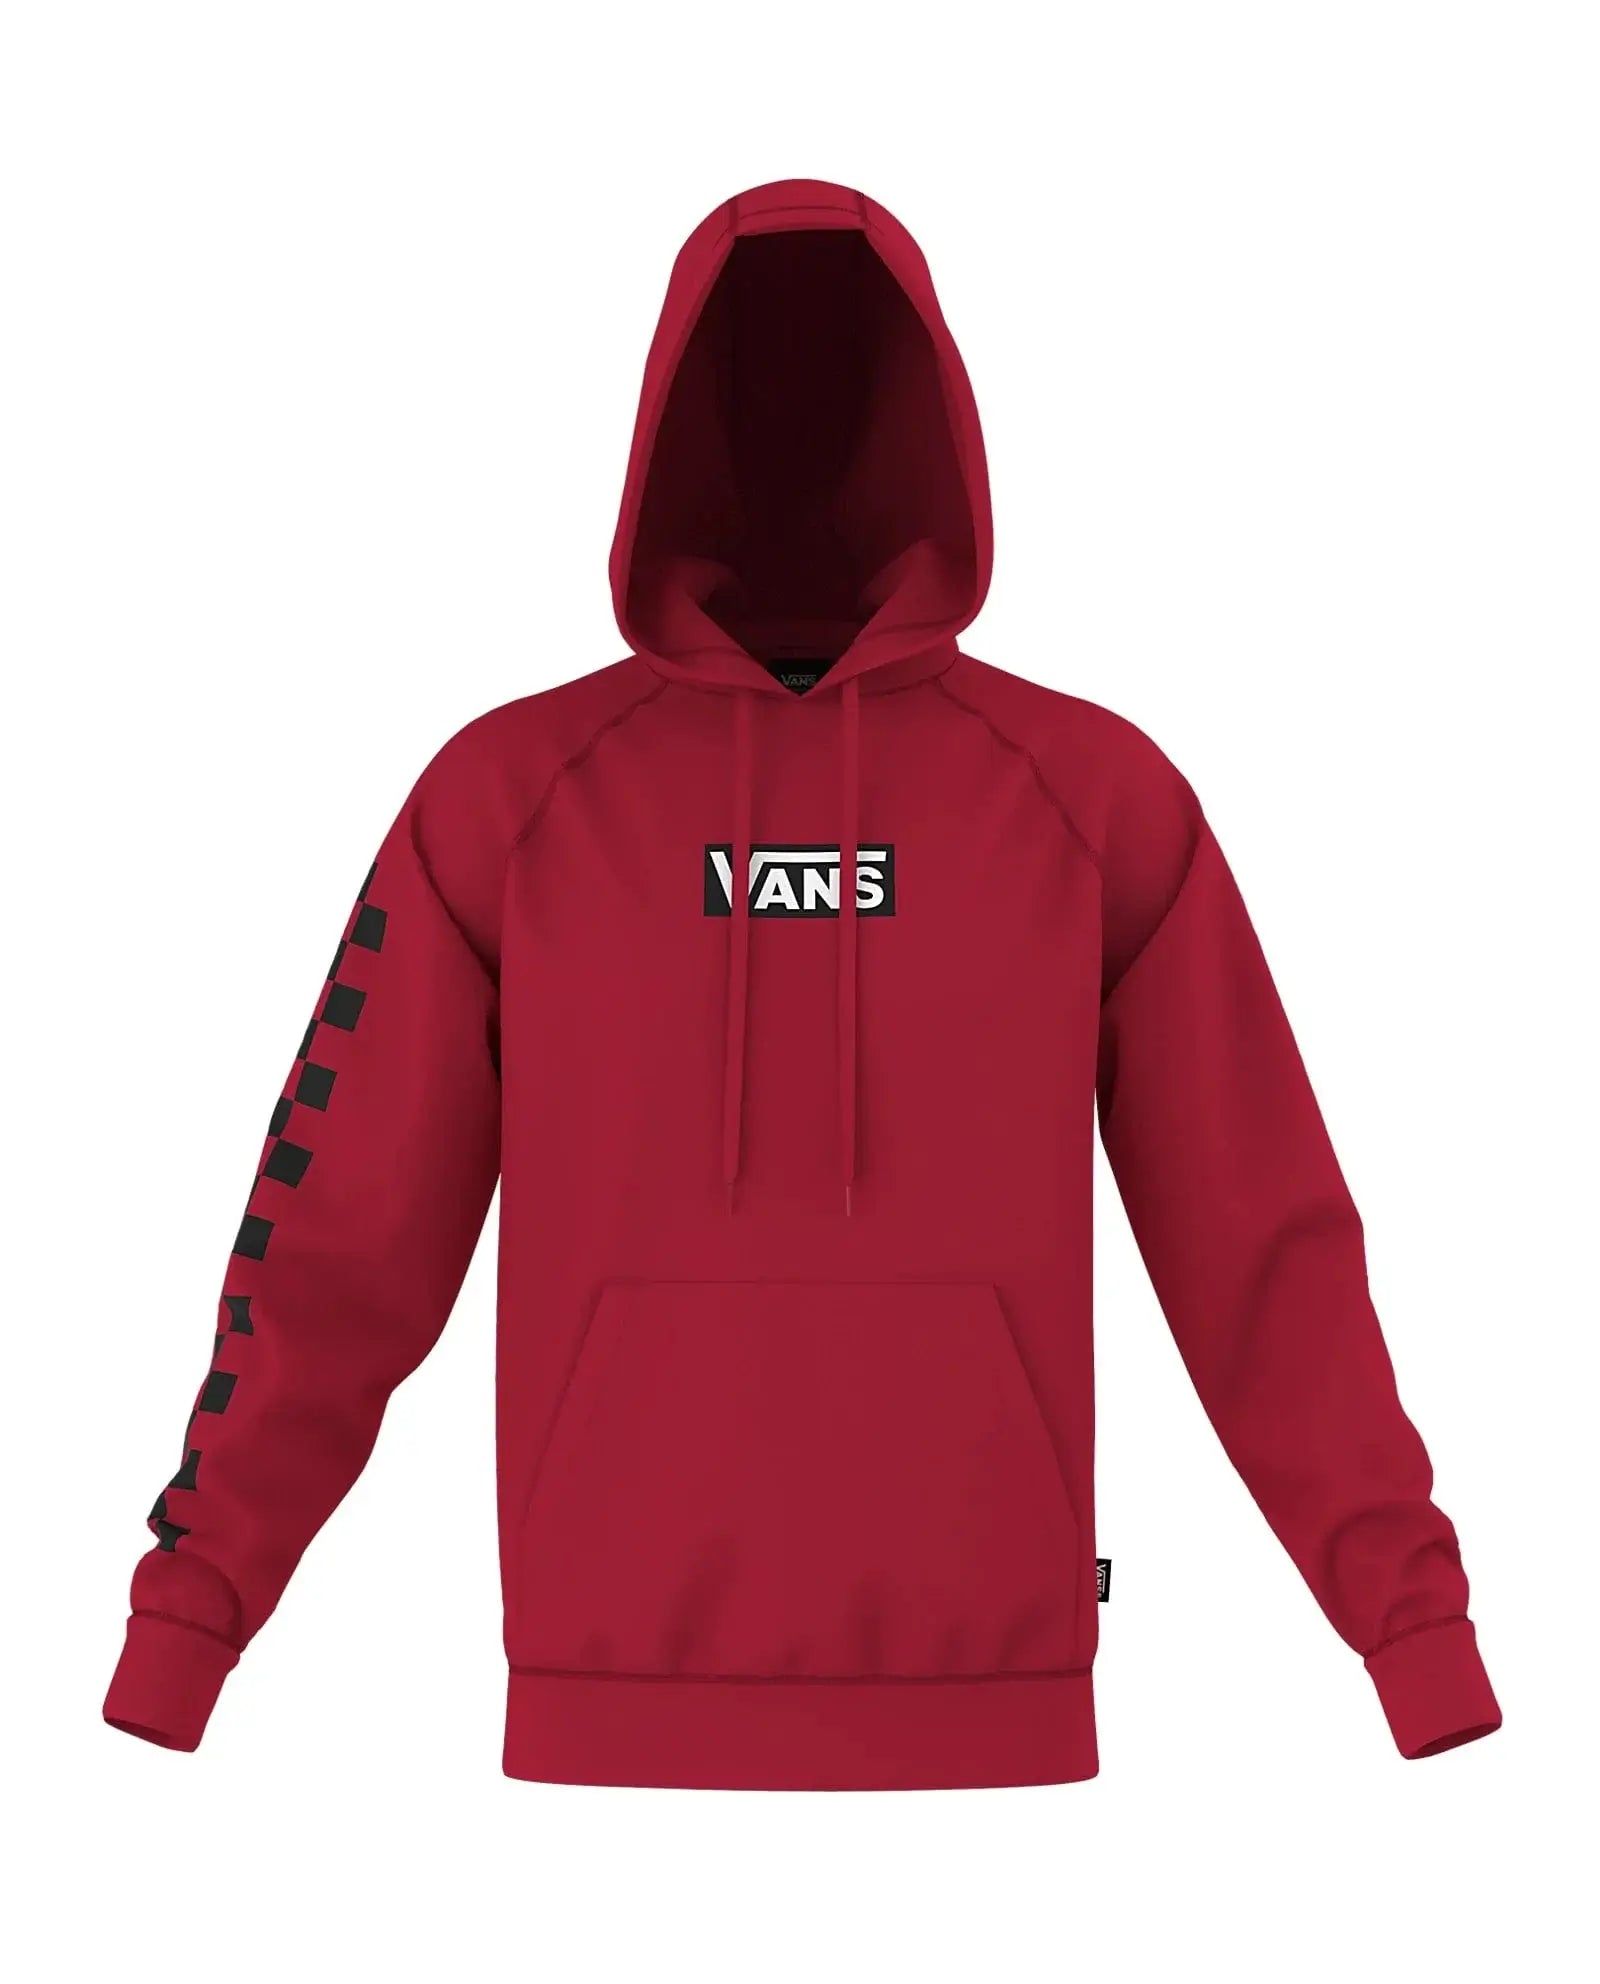 VANS hoodie small / Chili Pepper Vans Versa Hoodie